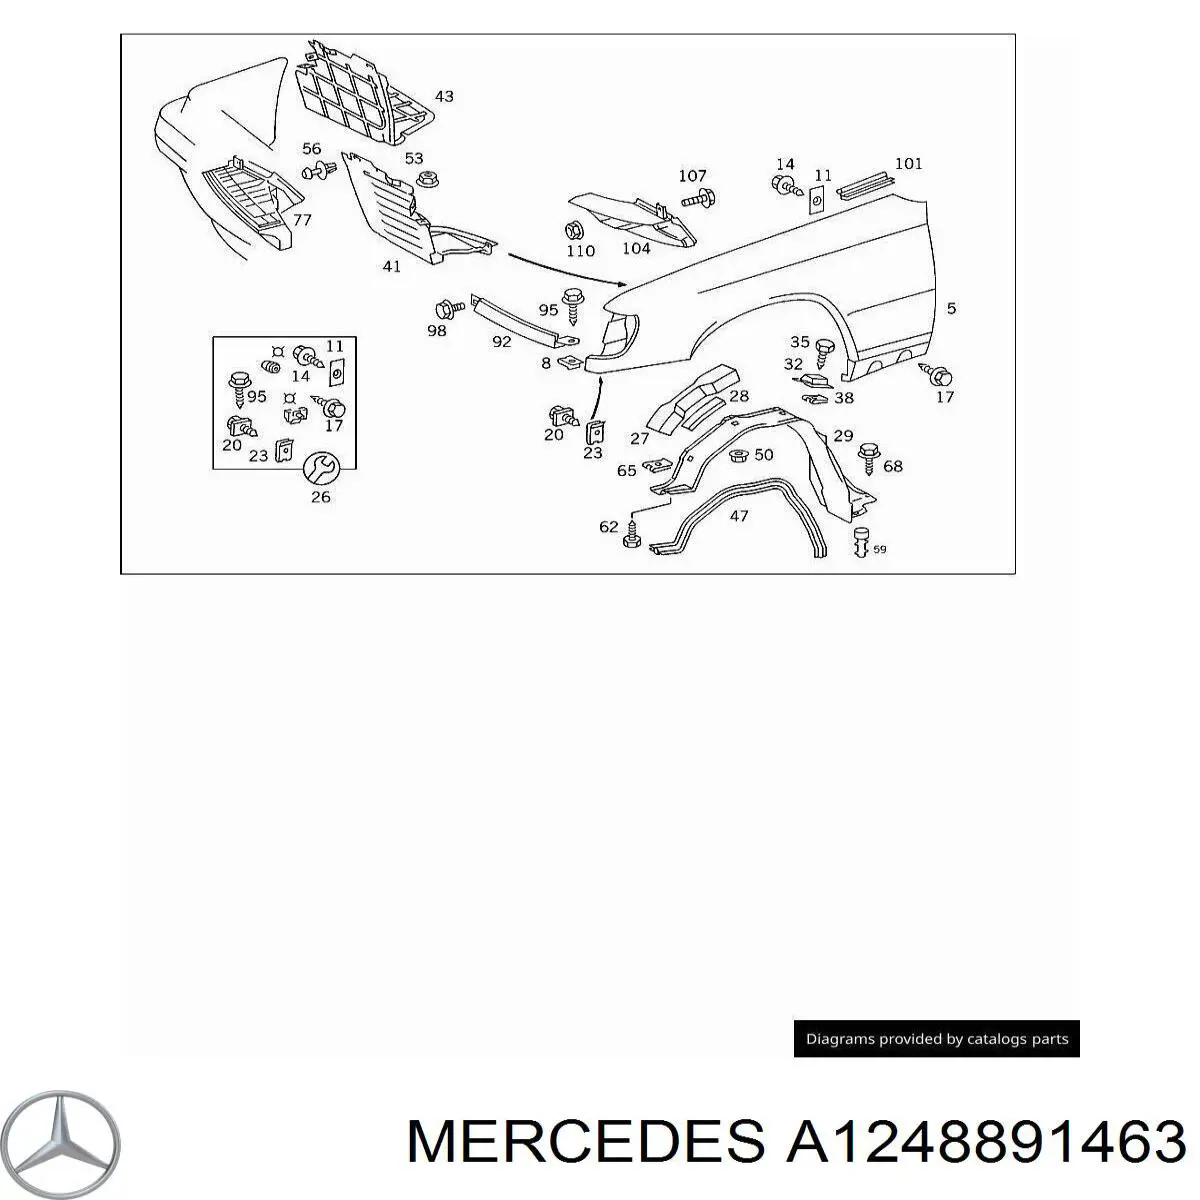 A1248891463 Mercedes listón del faro derecho